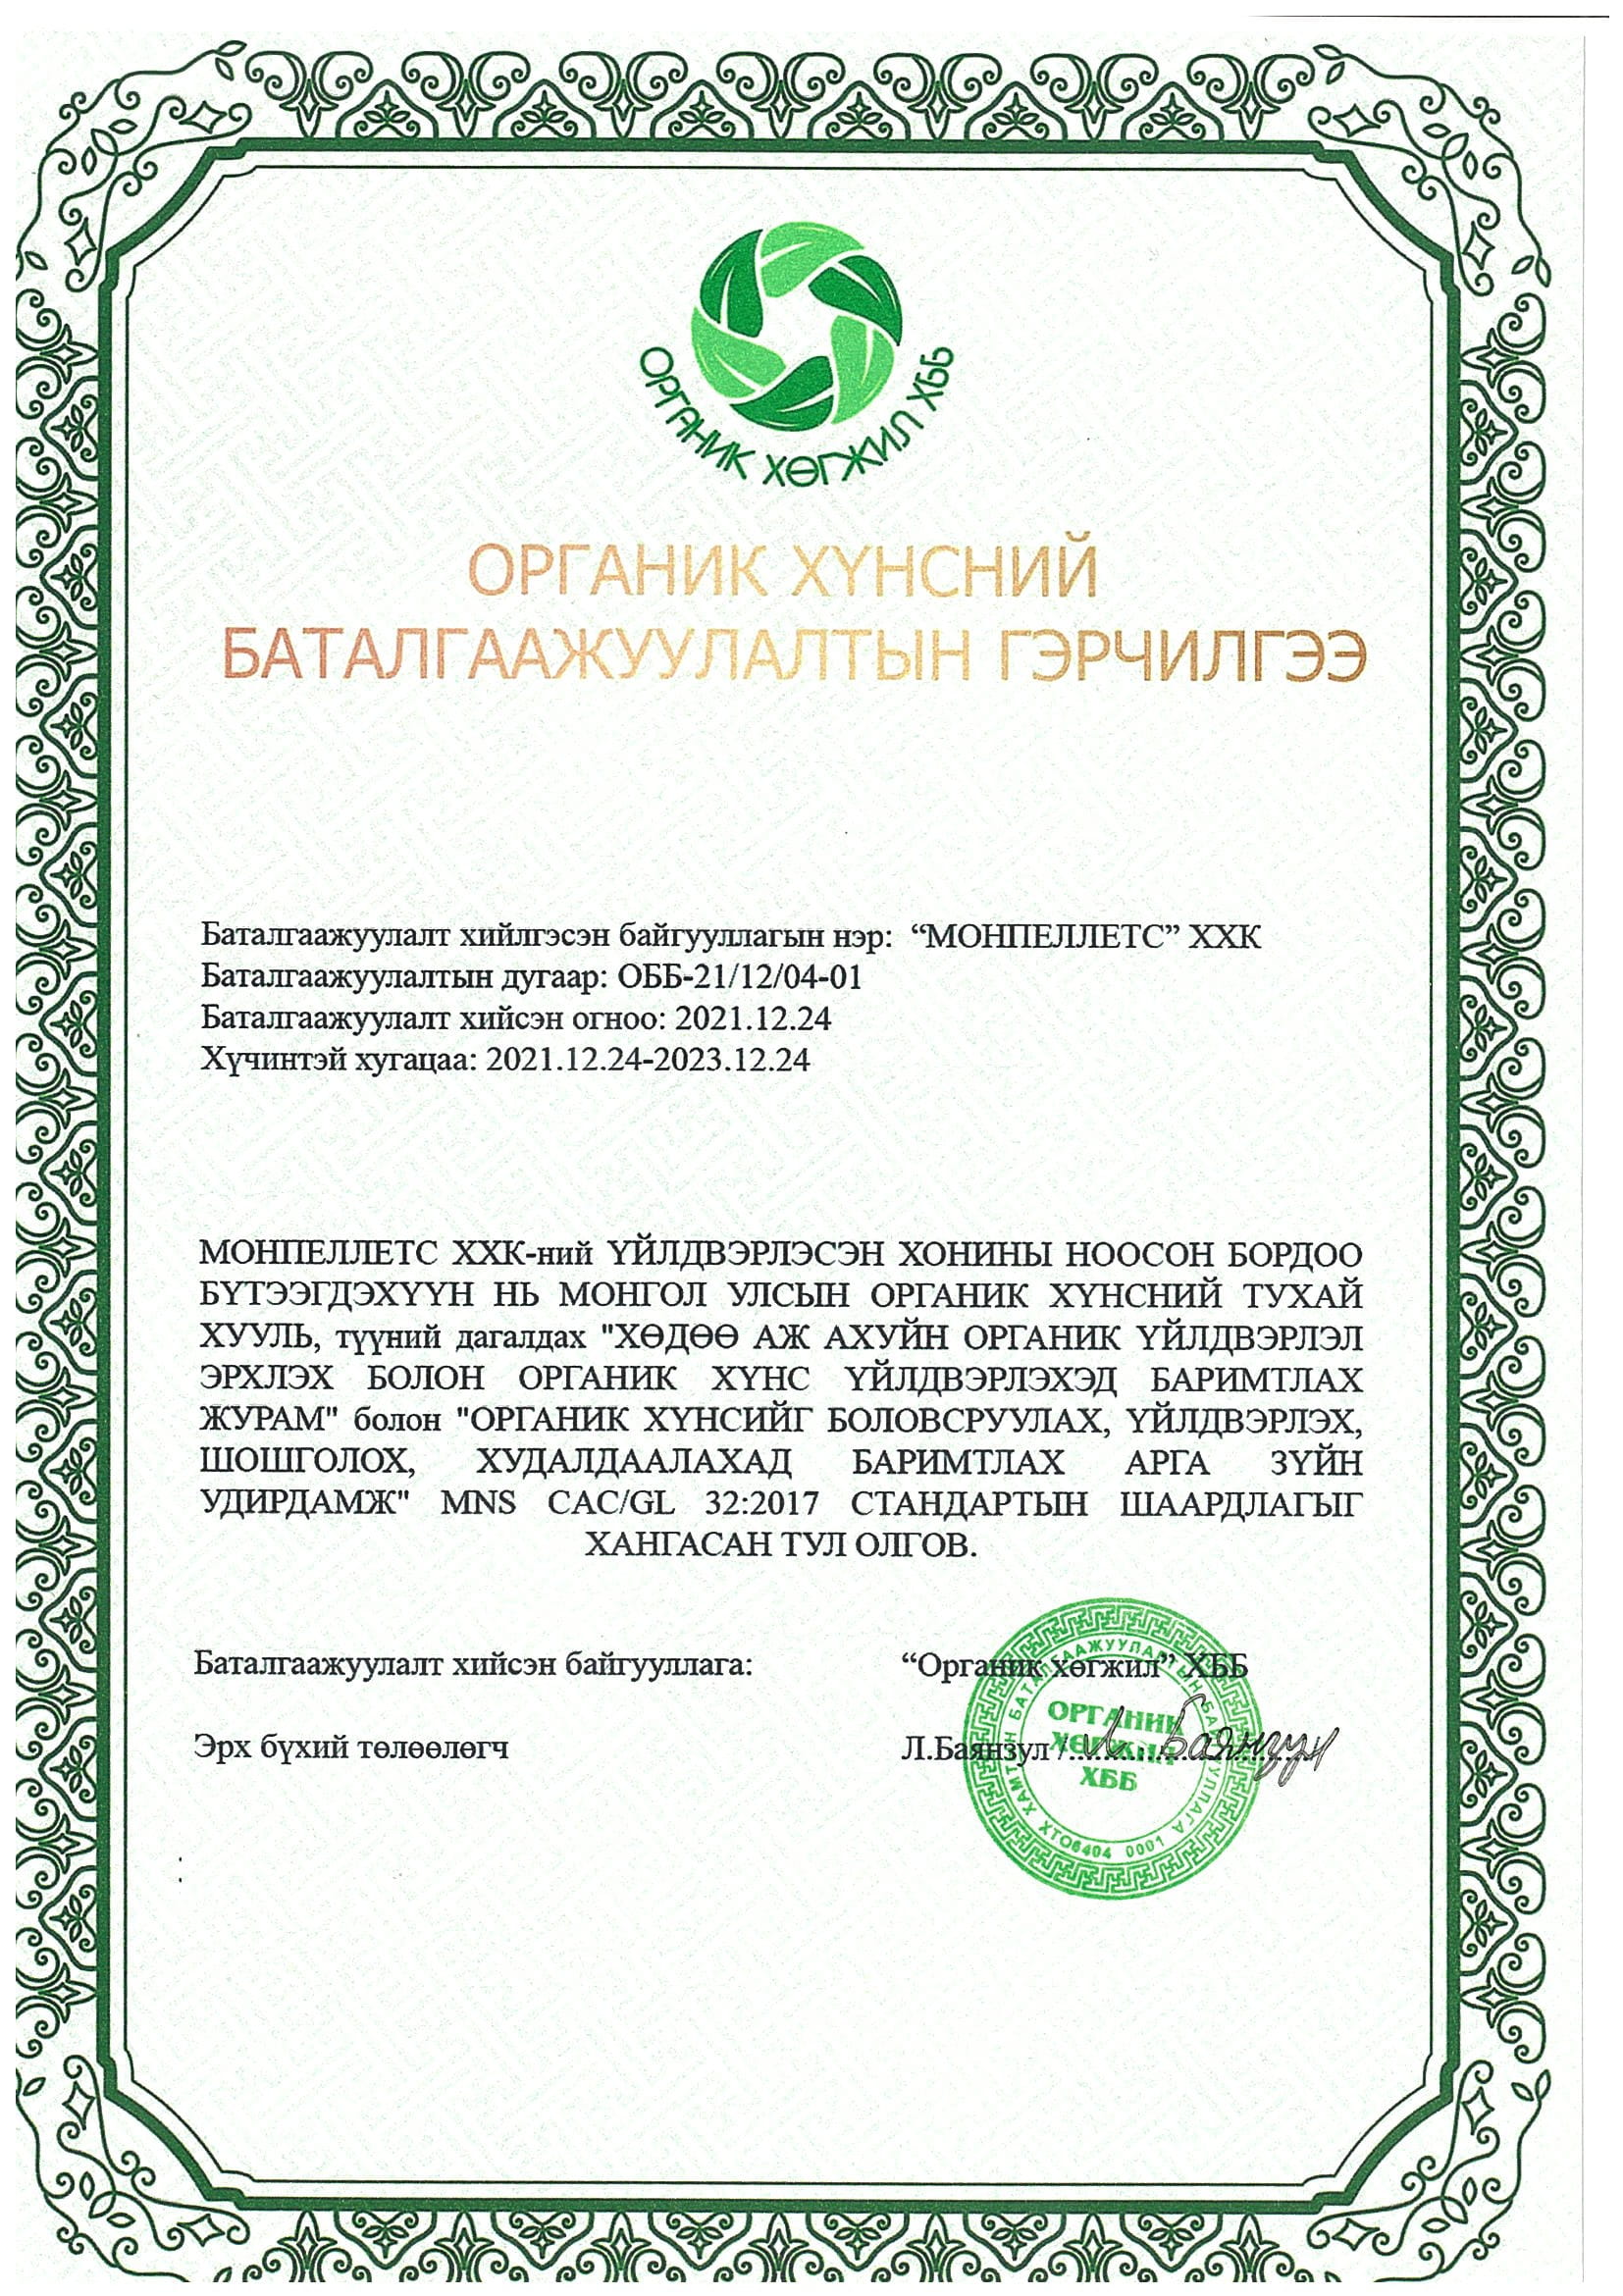 Erfolgreich ein Zertifikat vom Hersteller von Bio-Produkten der Mongolei erhalten 